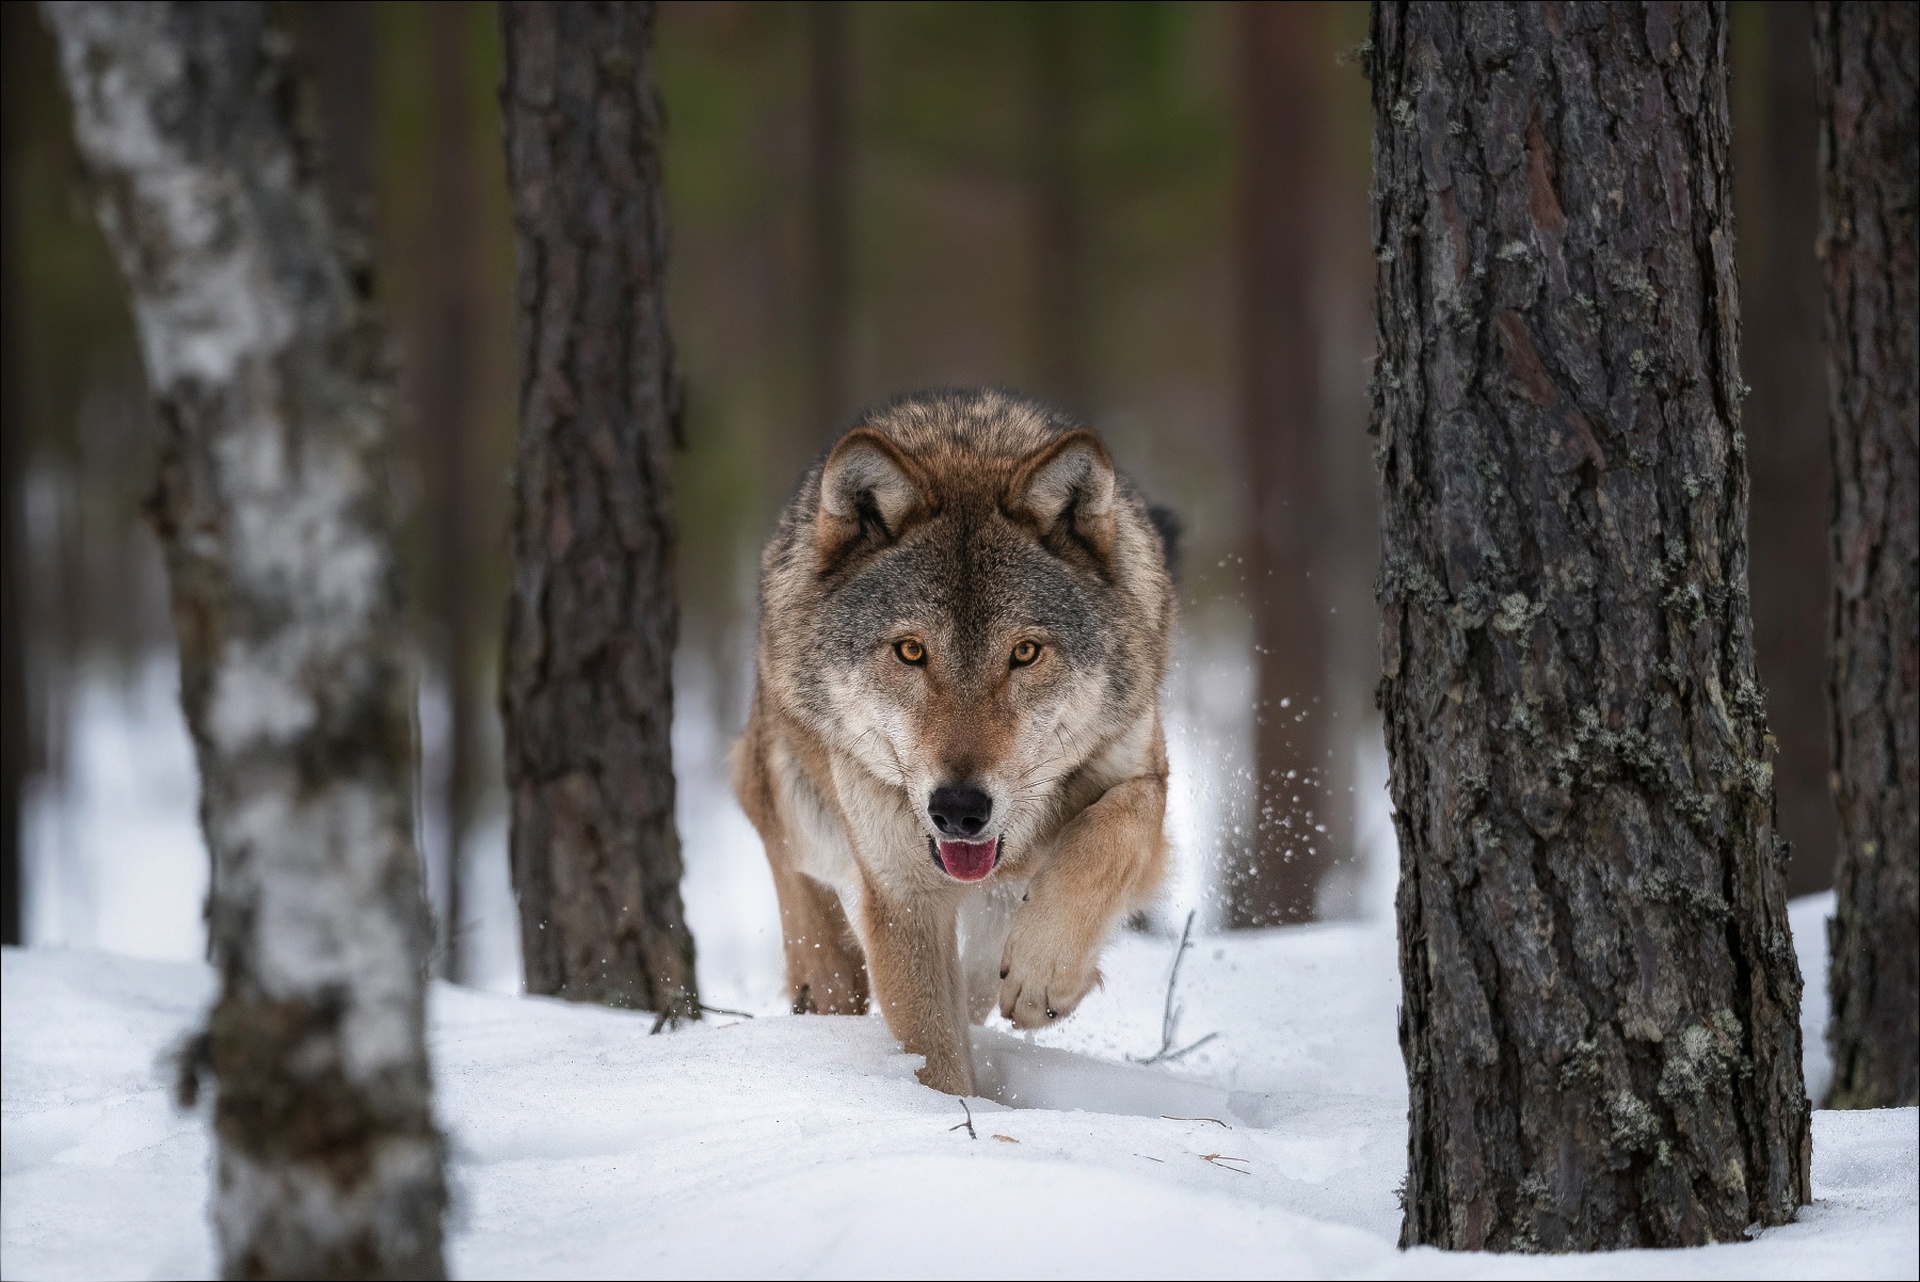 Descarga gratuita de fondo de pantalla para móvil de Animales, Invierno, Nieve, Lobo, Wolves.